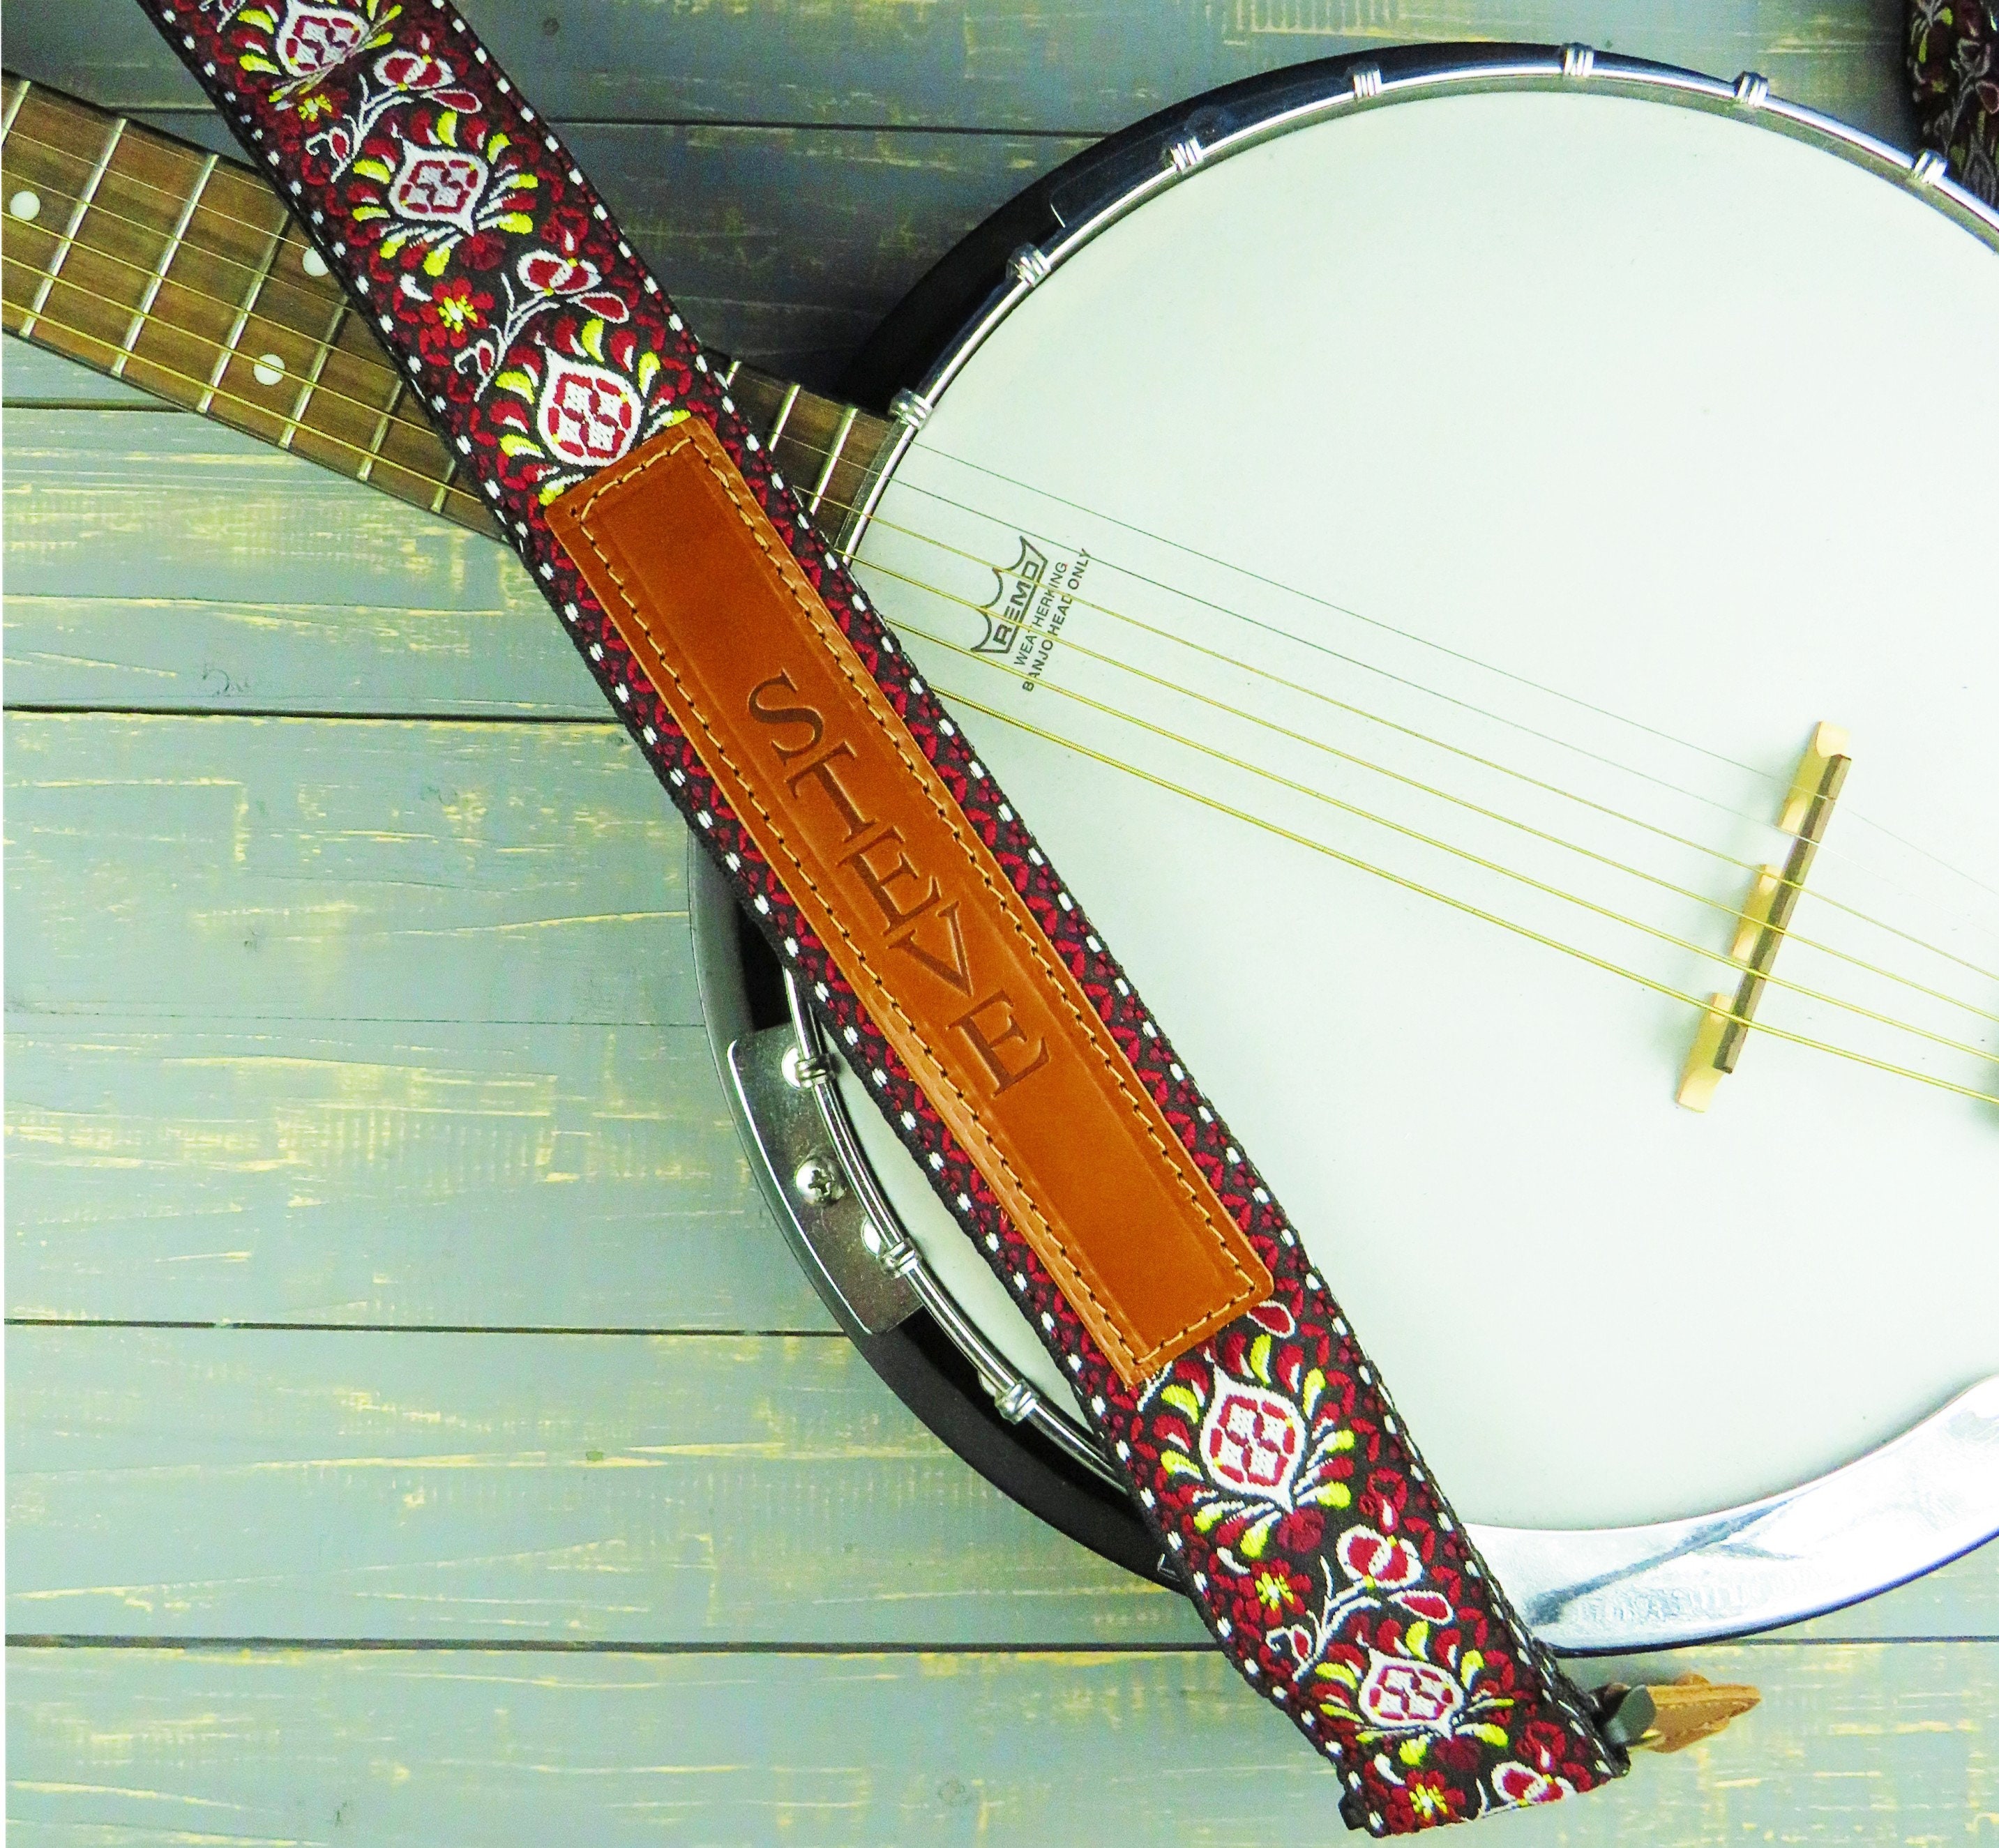 Retro Cotton Tweed Banjo Adjustable Strap 